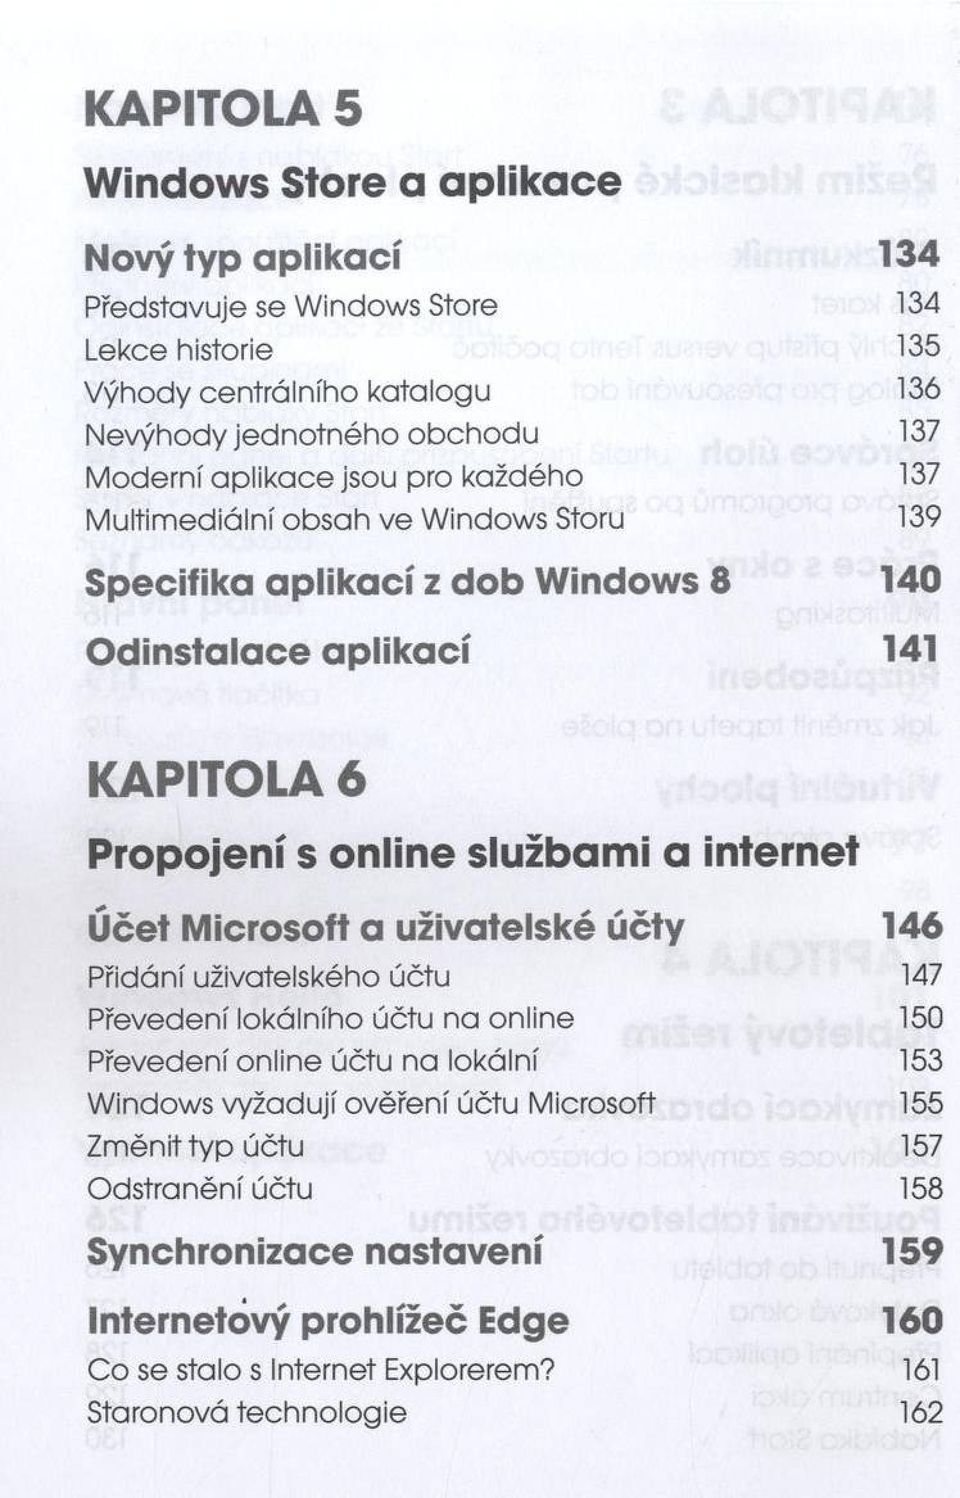 službami a internet Účet Microsoft a uživatelské účty 146 Přidání uživatelského účtu 147 Převedení lokálního účtu na online 150 Převedení online účtu na lokální 153 Windows